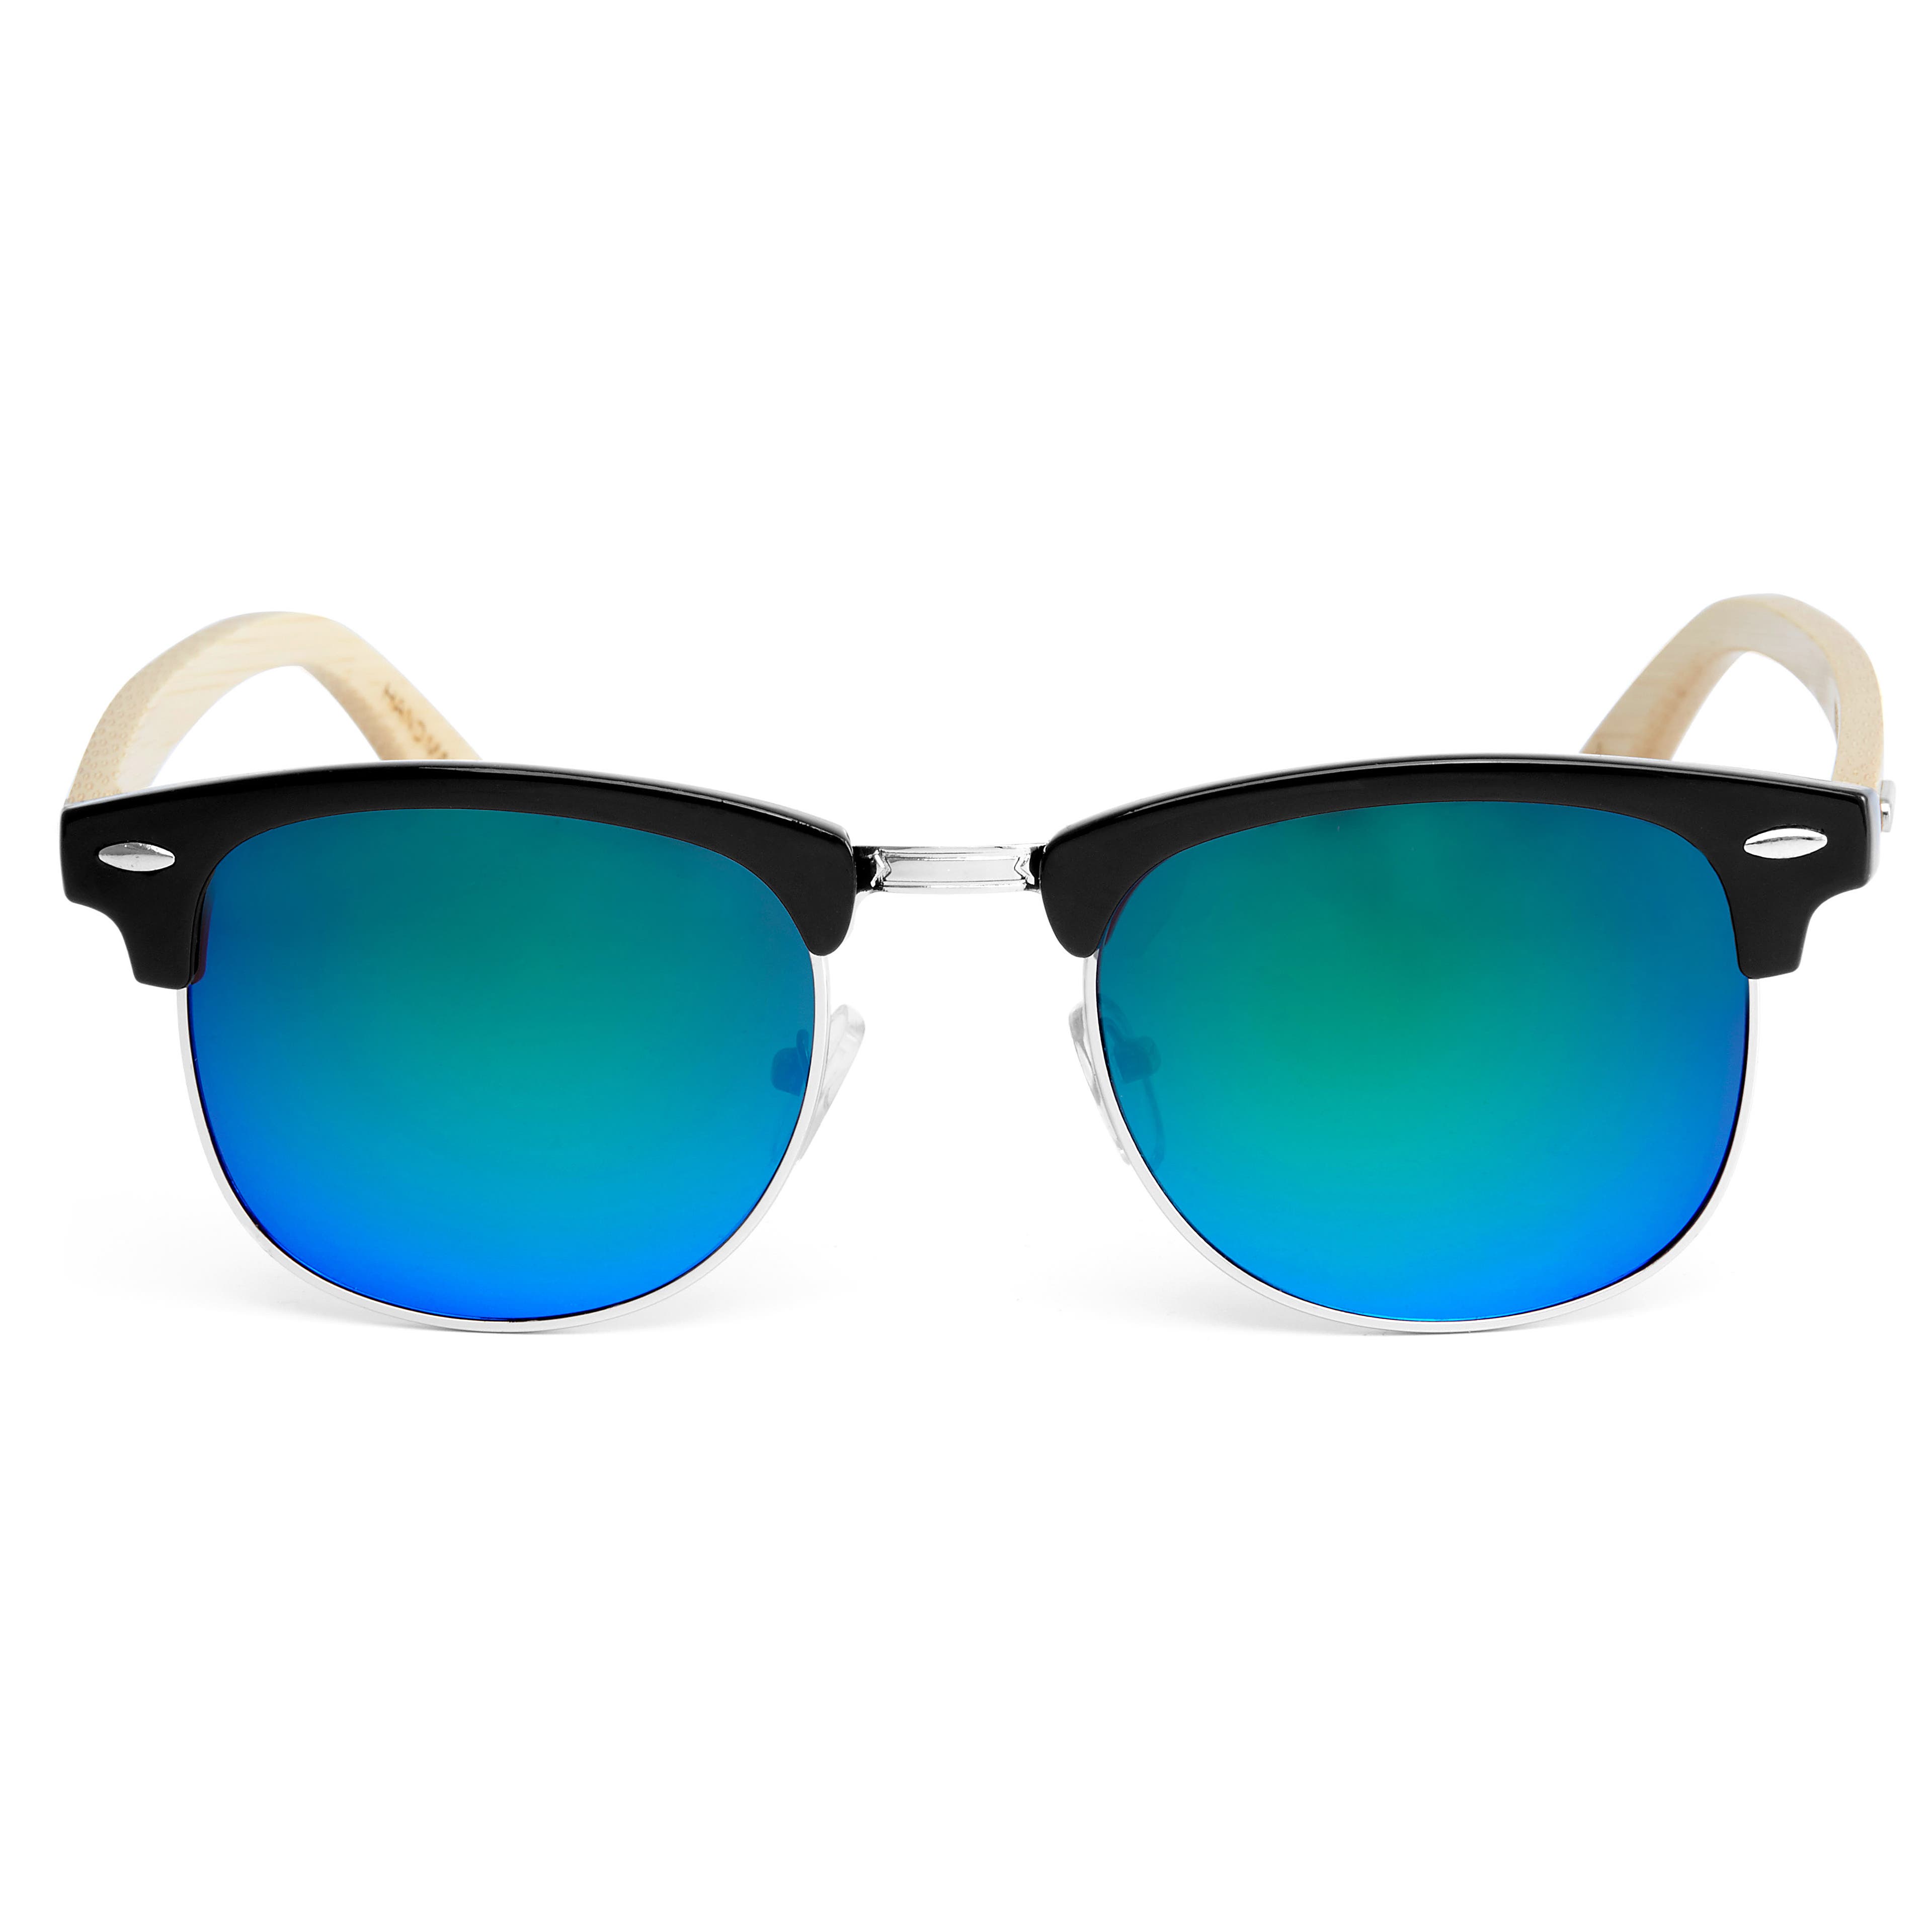 Modrozelené sluneční brýle s dřevěnými nožičkami